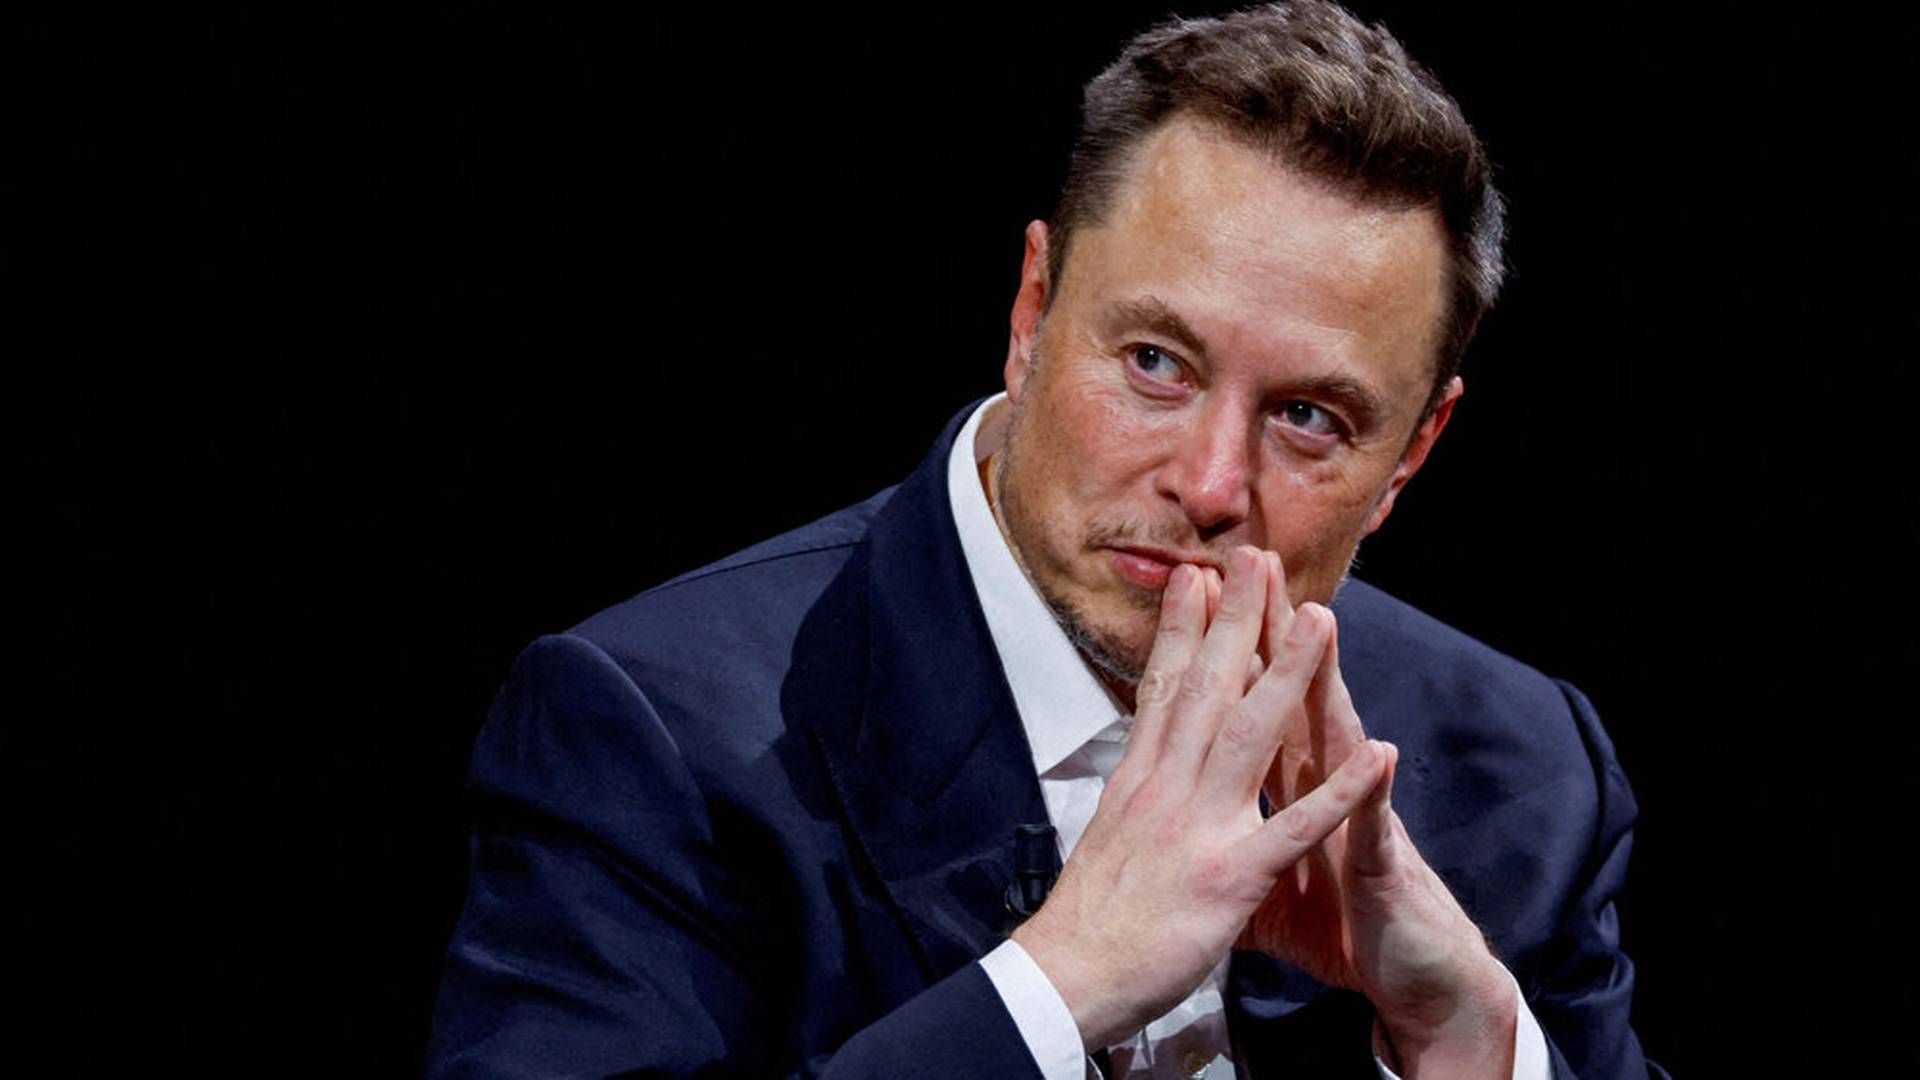 Det sociale medie X er ejet af rigmanden Elon Musk. | Foto: Gonzalo Fuentes/Reuters